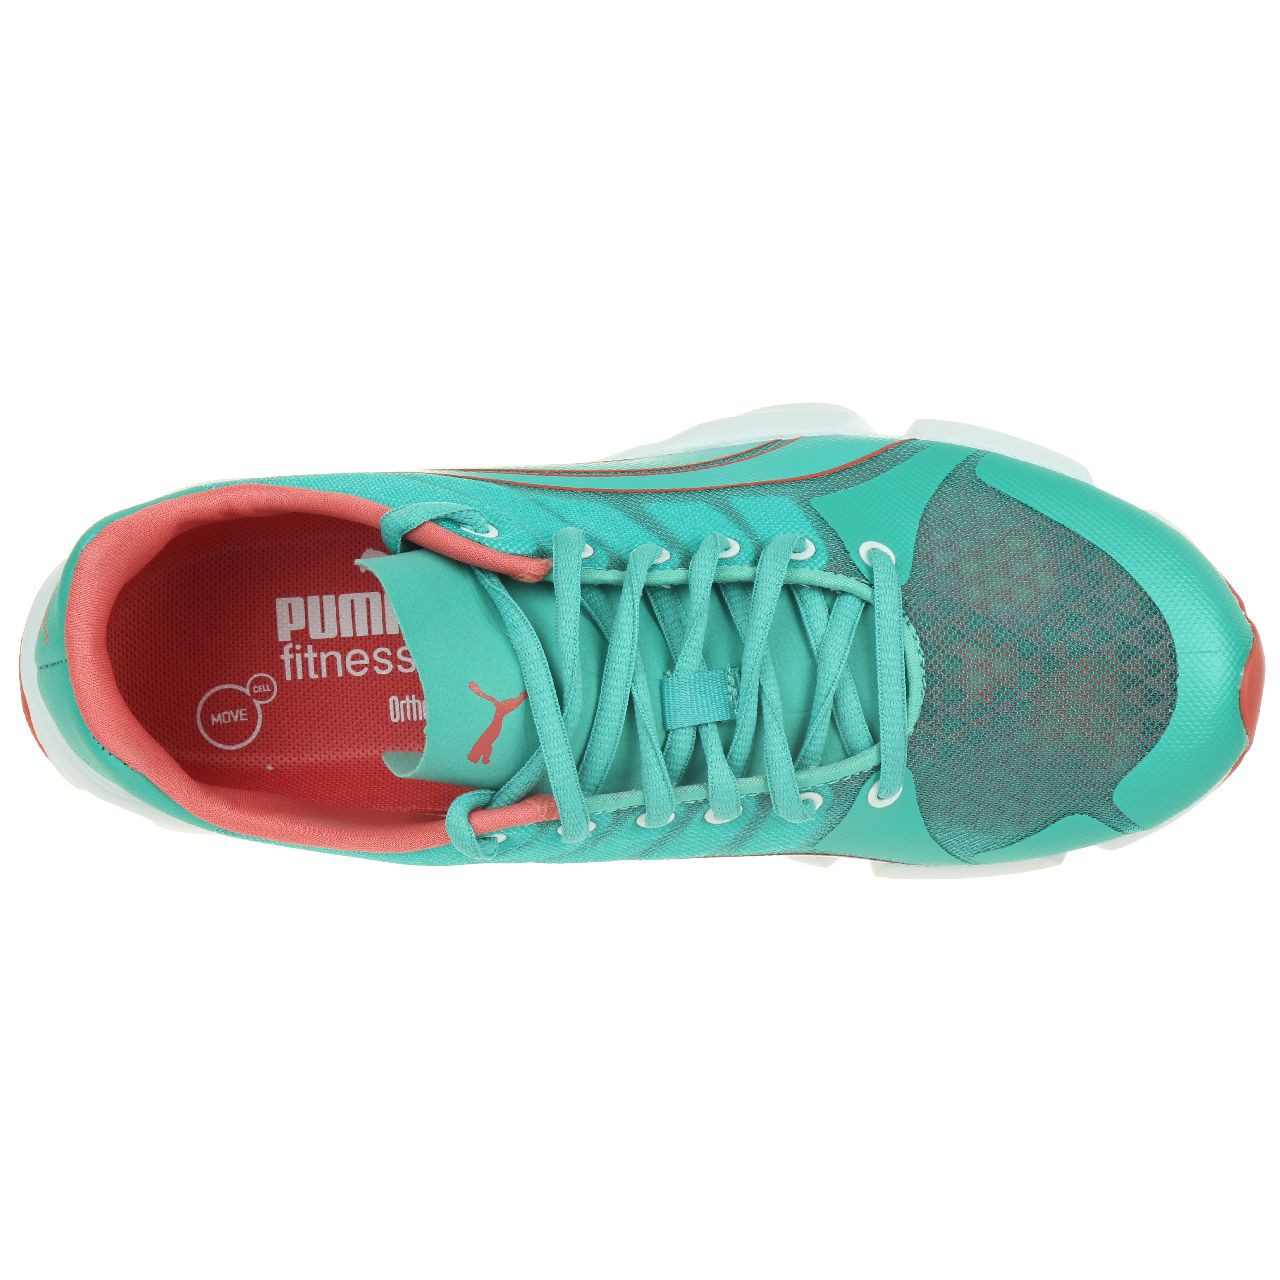 Puma FormLite XT Ultra2 Ombre Fitness Schuhe Sneaker 187340 02 women damen